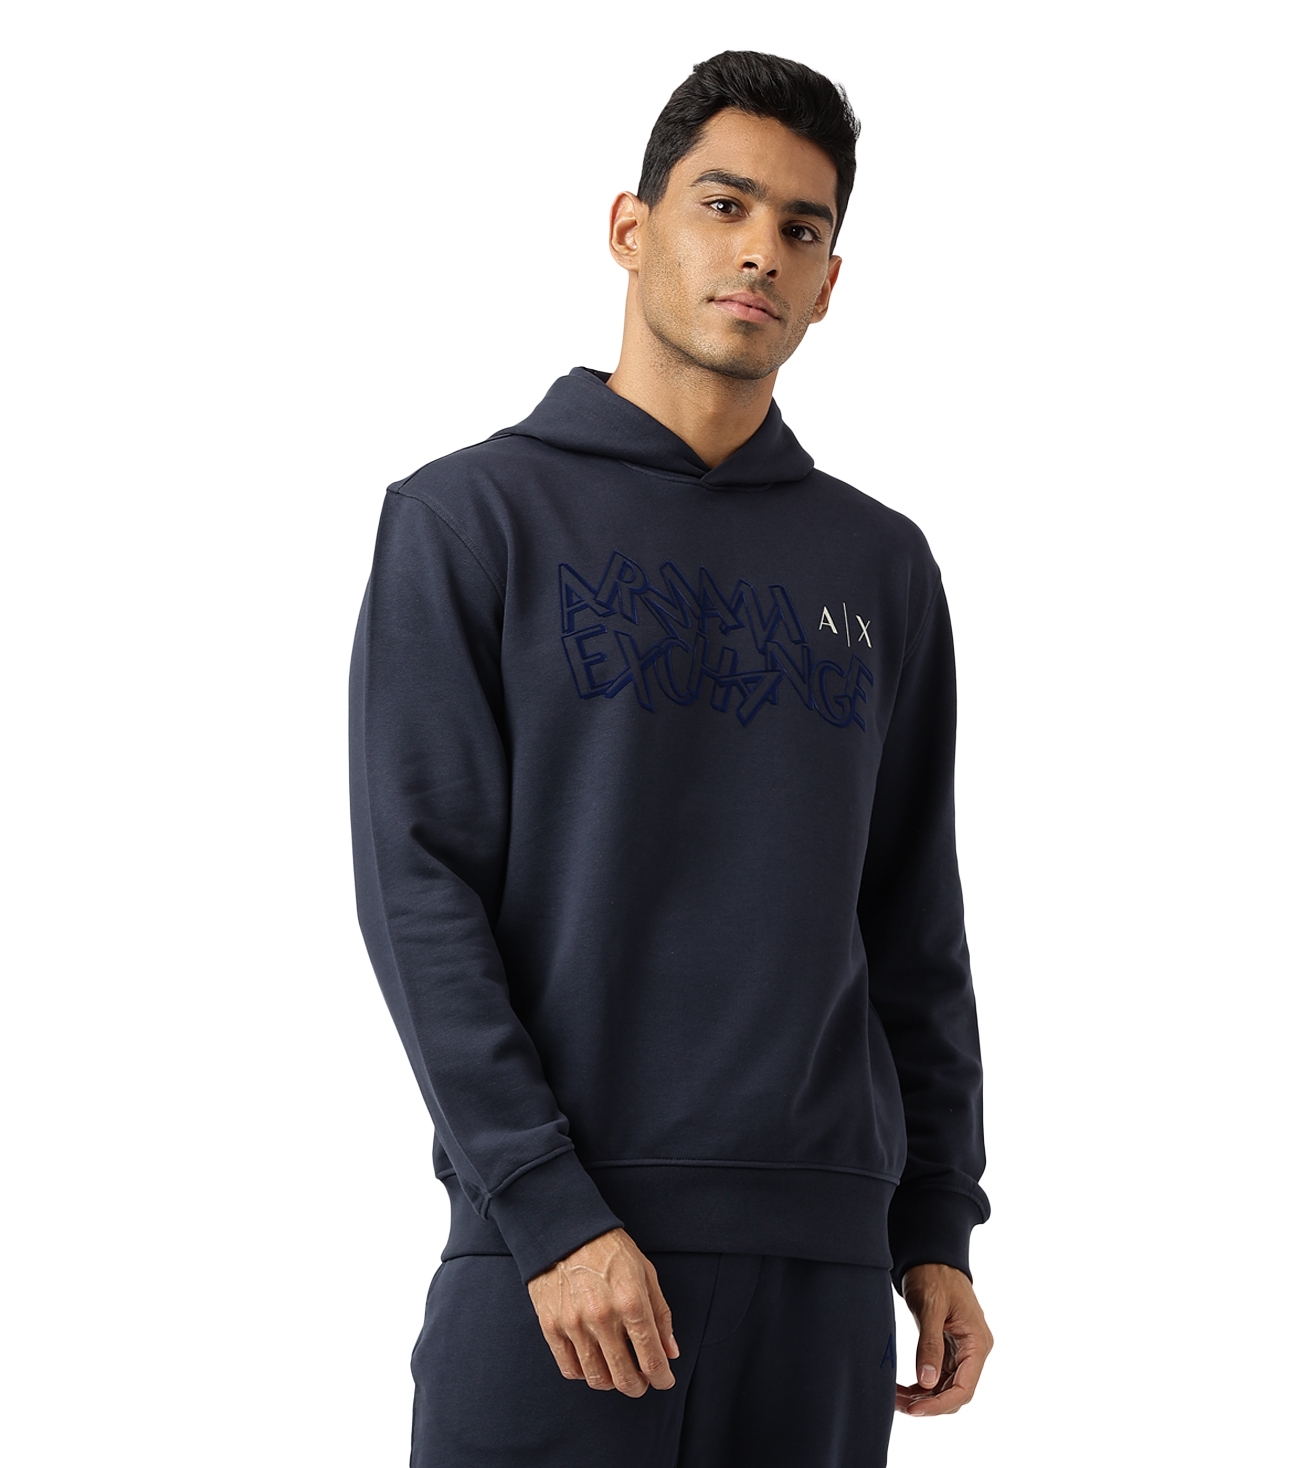 Armani Exchange Men's Sweatshirts